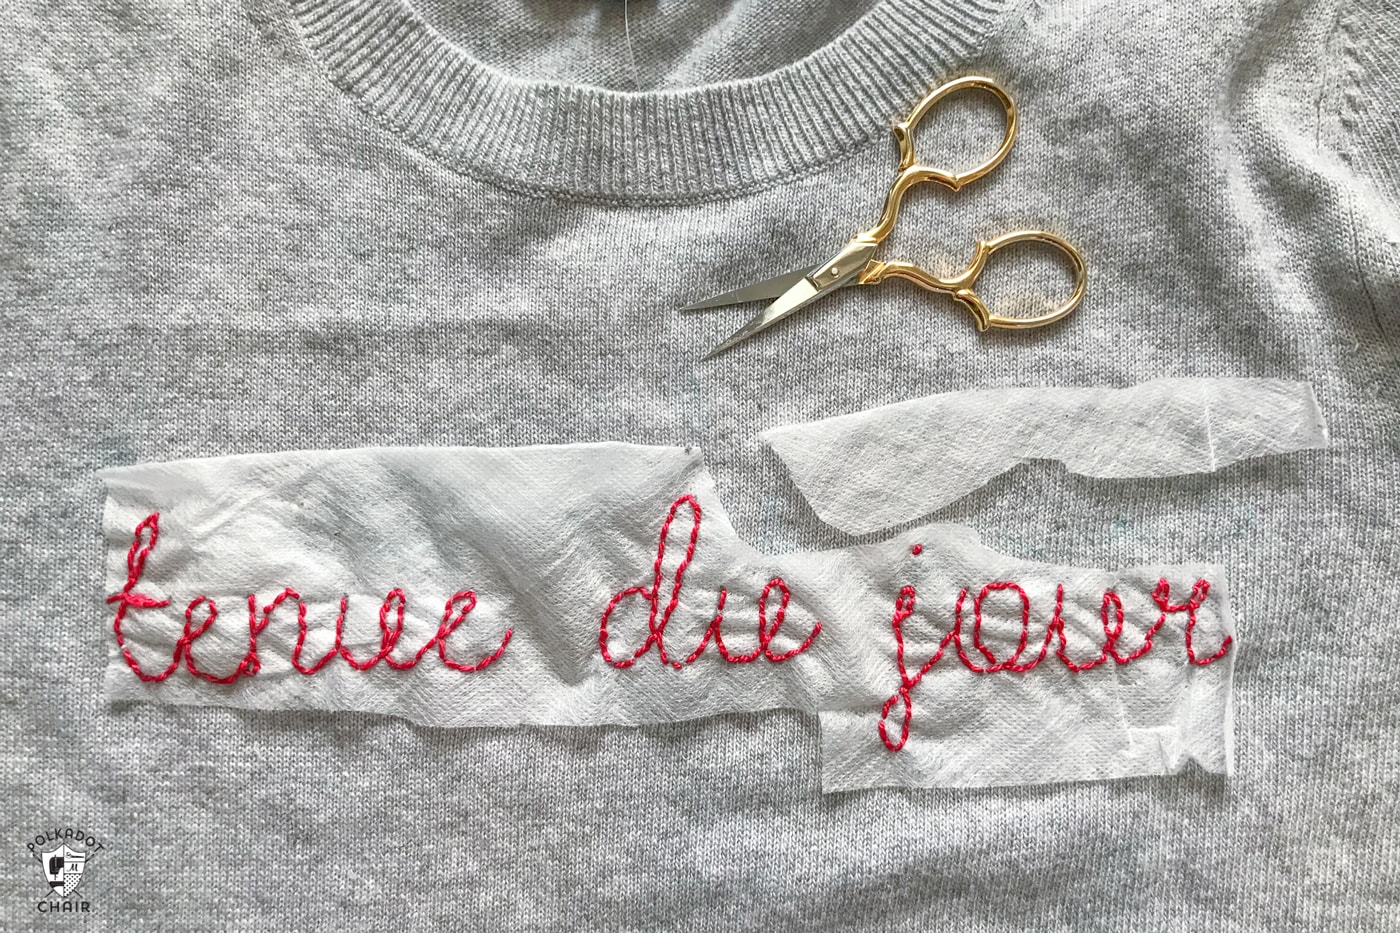 Apprenez à réaliser un pull brodé DIY avec une citation française amusante. Comprend un motif de broderie gratuit pour le devis. Une façon astucieuse de relooker un vieux pull. #DIYEmbroidery #DIYFashion #broderedsweater #tutorial